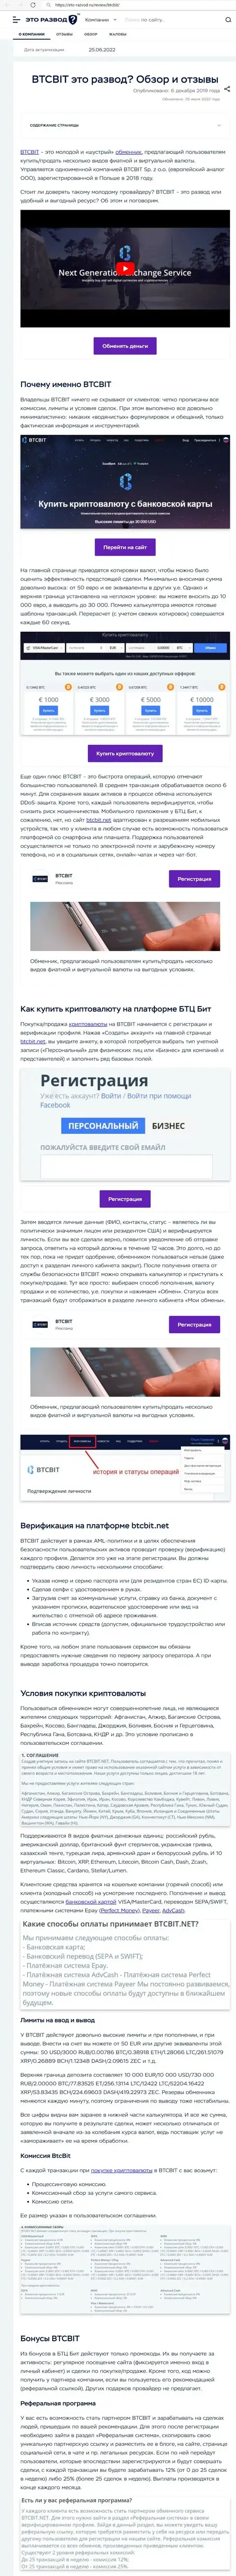 Обзор деятельности и условия для работы обменника BTCBit в информационном материале на веб-сервисе Eto Razvod Ru